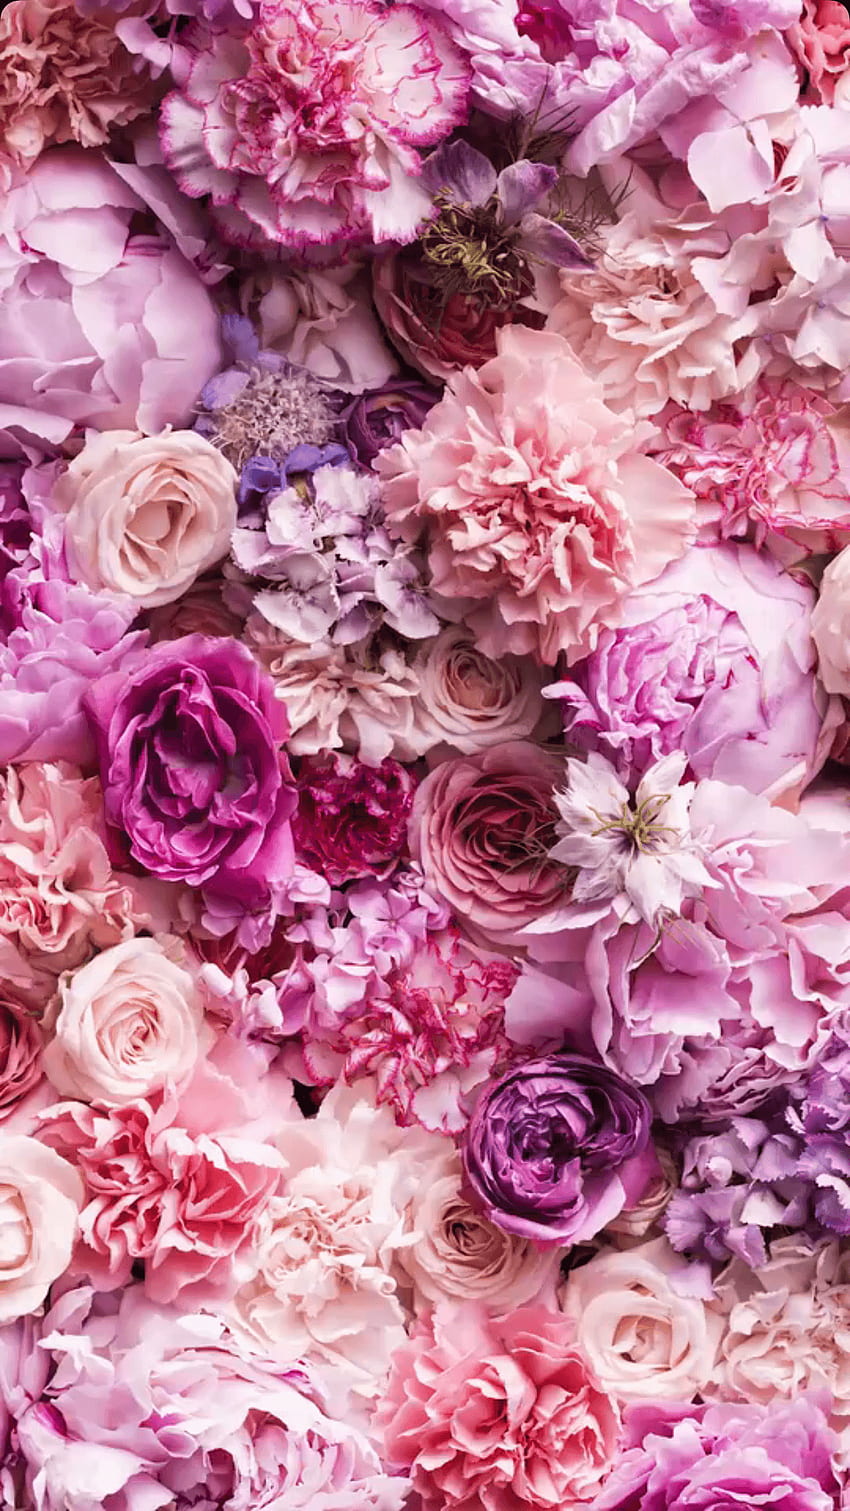 Hoa cổ điển mang đến vẻ đẹp truyền thống, tinh tế và lãng mạn. Hãy thưởng thức bức ảnh gắn với từ khóa này để trở về thời kỳ hoàng kim của nghệ thuật hoa cũ.